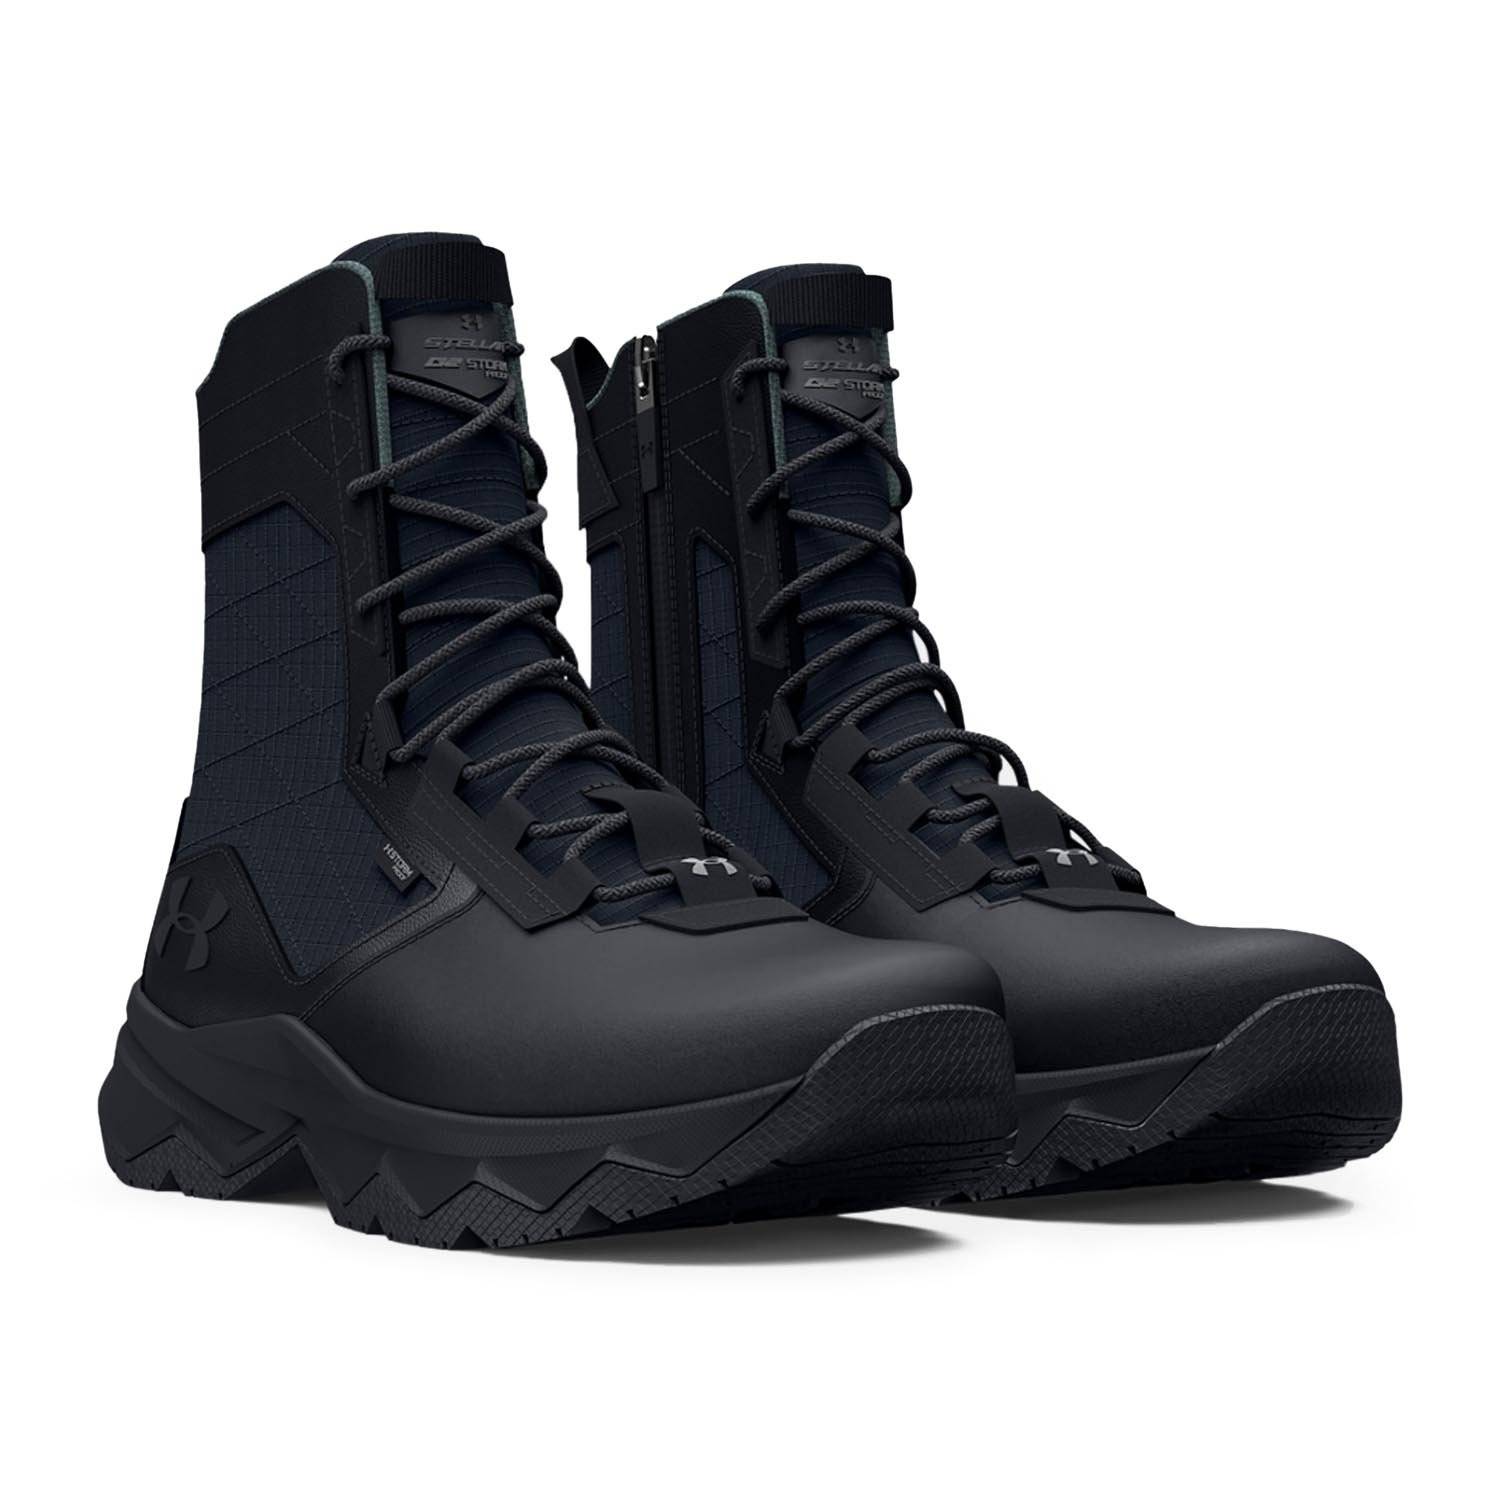 Under Armour Men's Micro G Valsetz Trek Mid Leather Waterproof Tactical  Boots